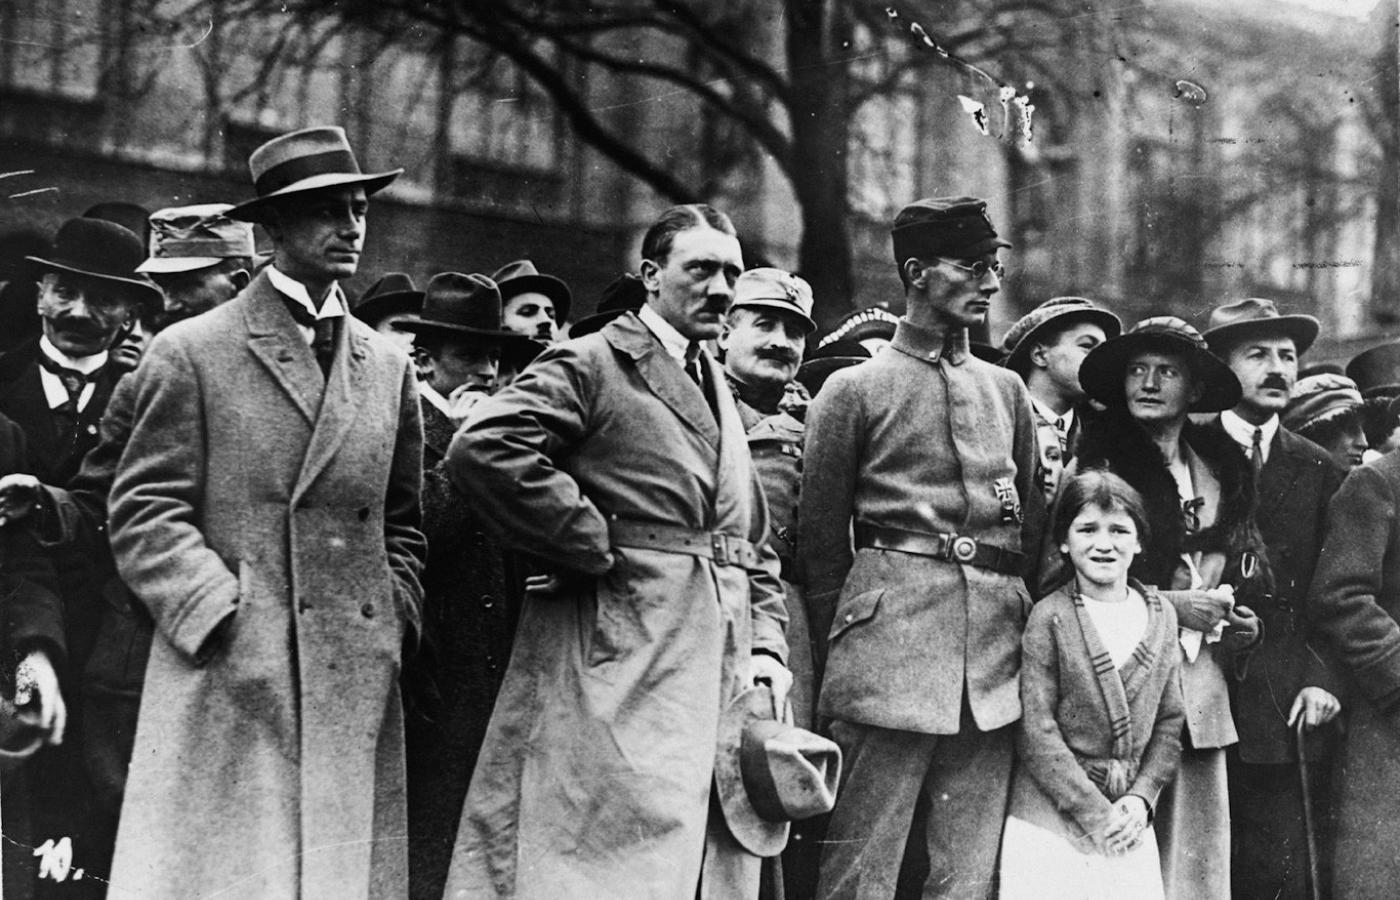 Hitler podczas puczu monachijskiego, 1923 r. Wydawało się, że naziści ośmieszeni tym nieudanym wystąpieniem już się nie podniosą.